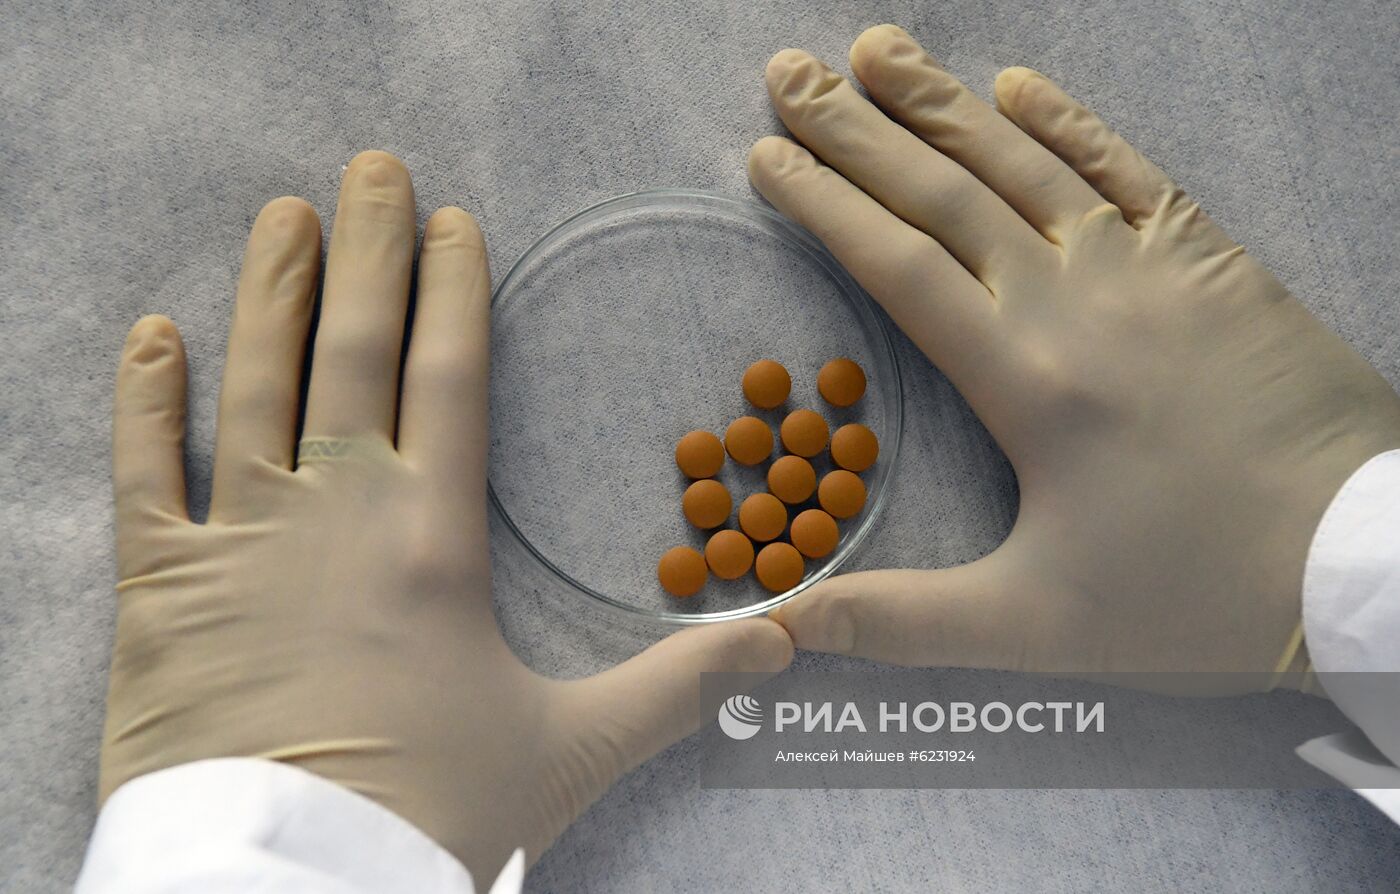 Отечественный препарат "Авифавир" для лечения COVID-19 начали поставлять в регионы России